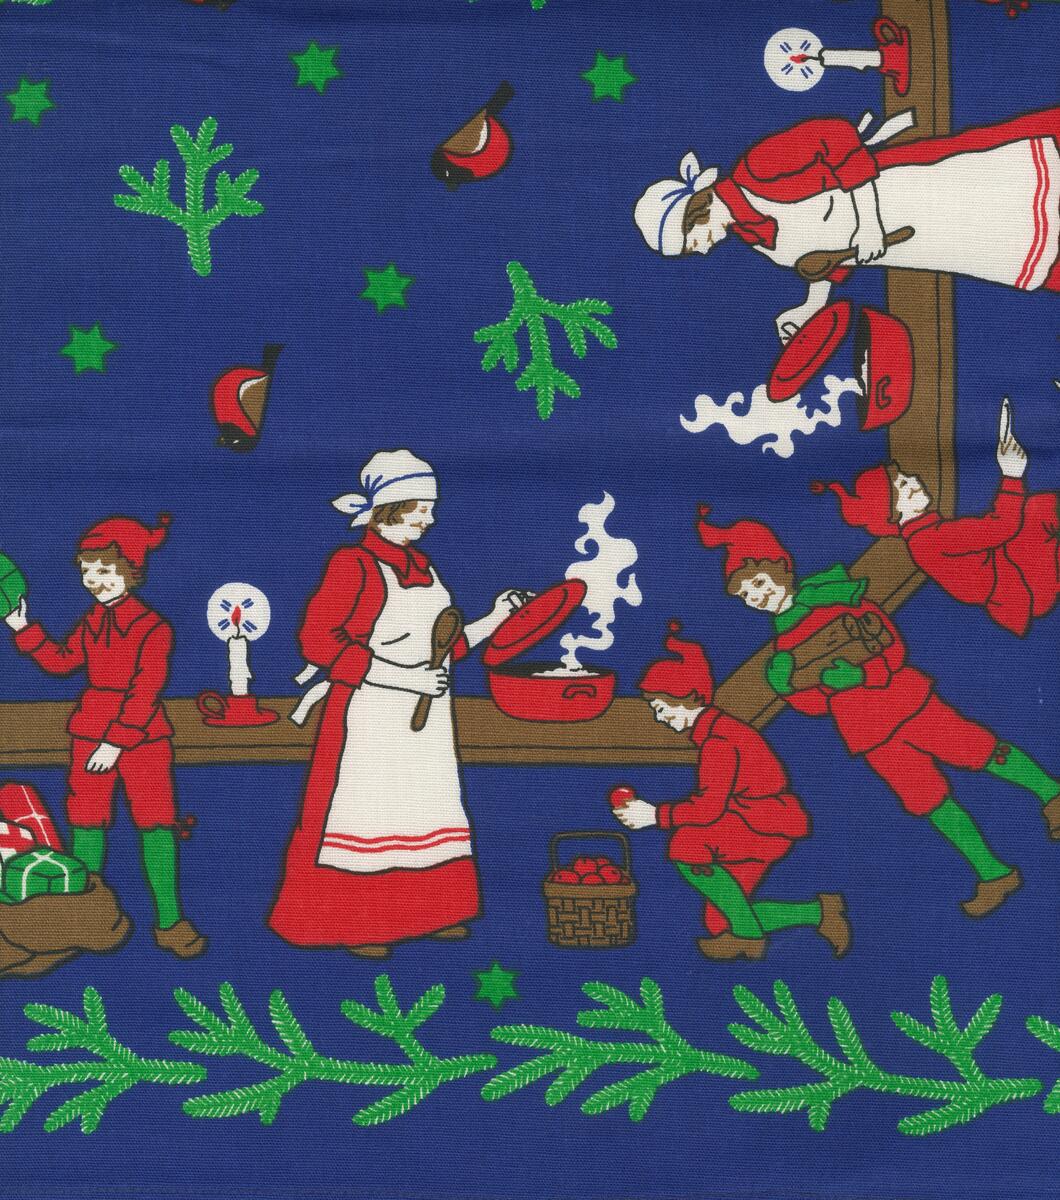 Duk: Brun, grön eller blå botten med gröna grankvistar i nederkant och mitten även domherrar i mitten, en kvinna i rött och vitt samt tomtenissar i rött och grönt som stökar i ett kök.